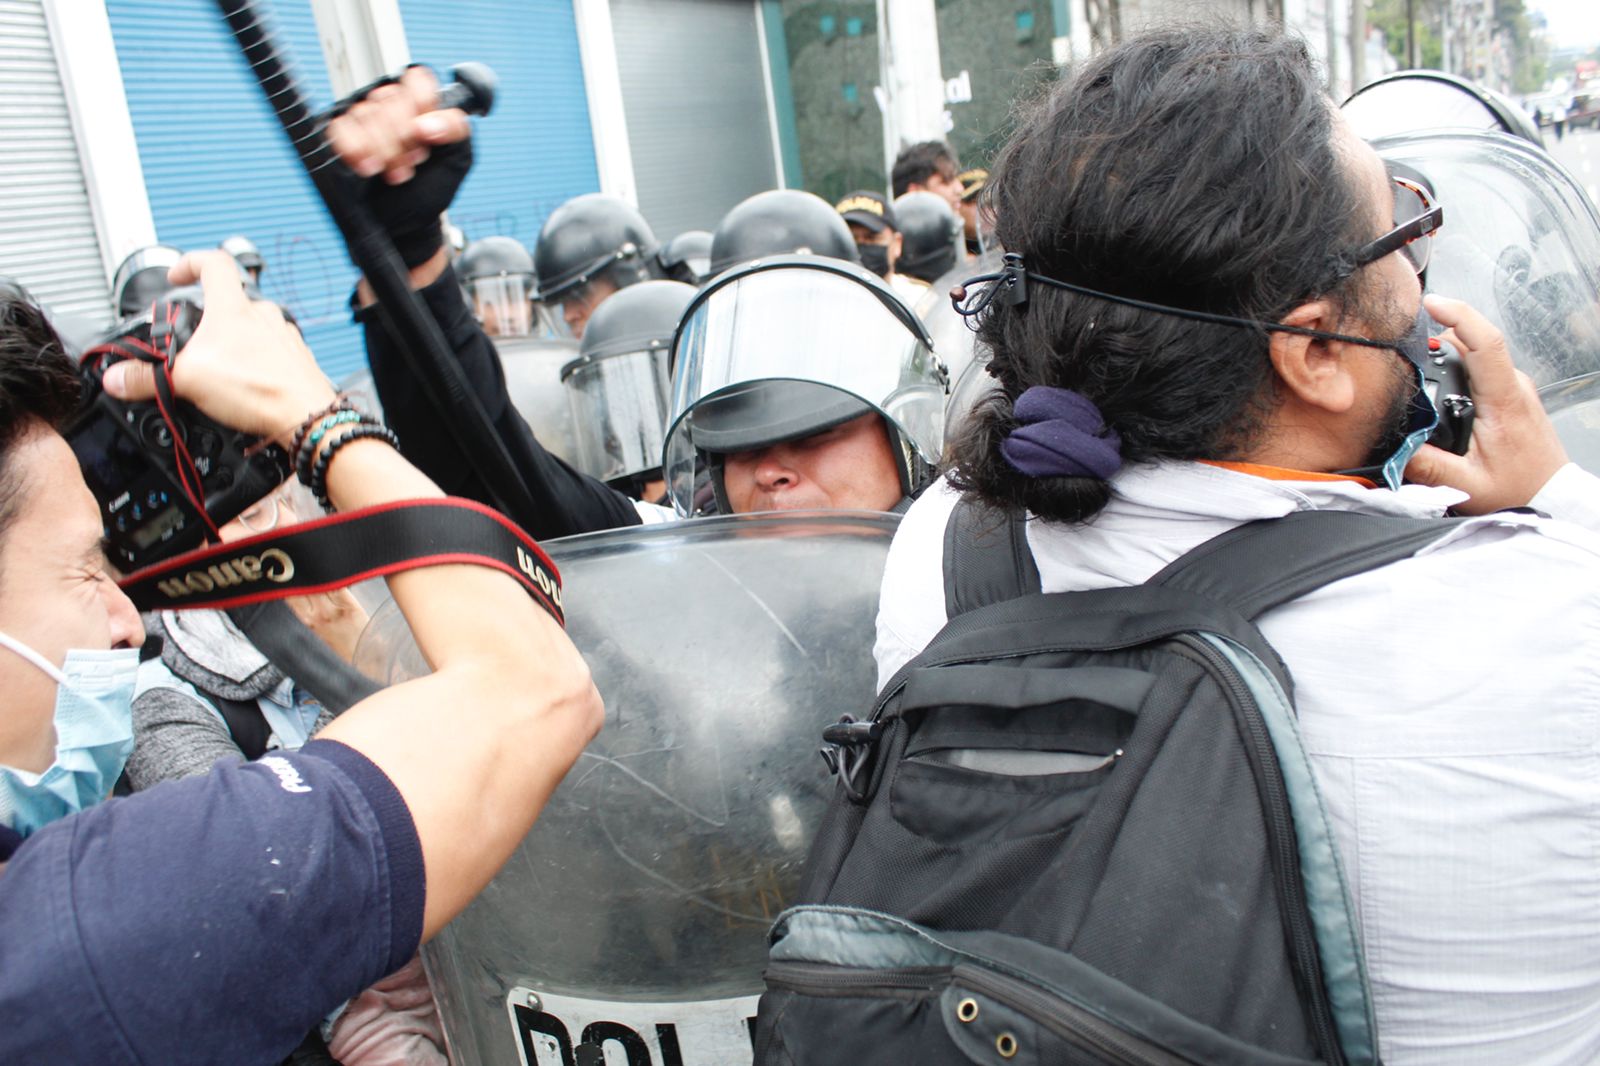 Un policía reacciona con violencia en contra de periodistas que cubrían una manifestación en ciudad de Guatemala. (Foto Prensa Libre: Hemeroteca PL)